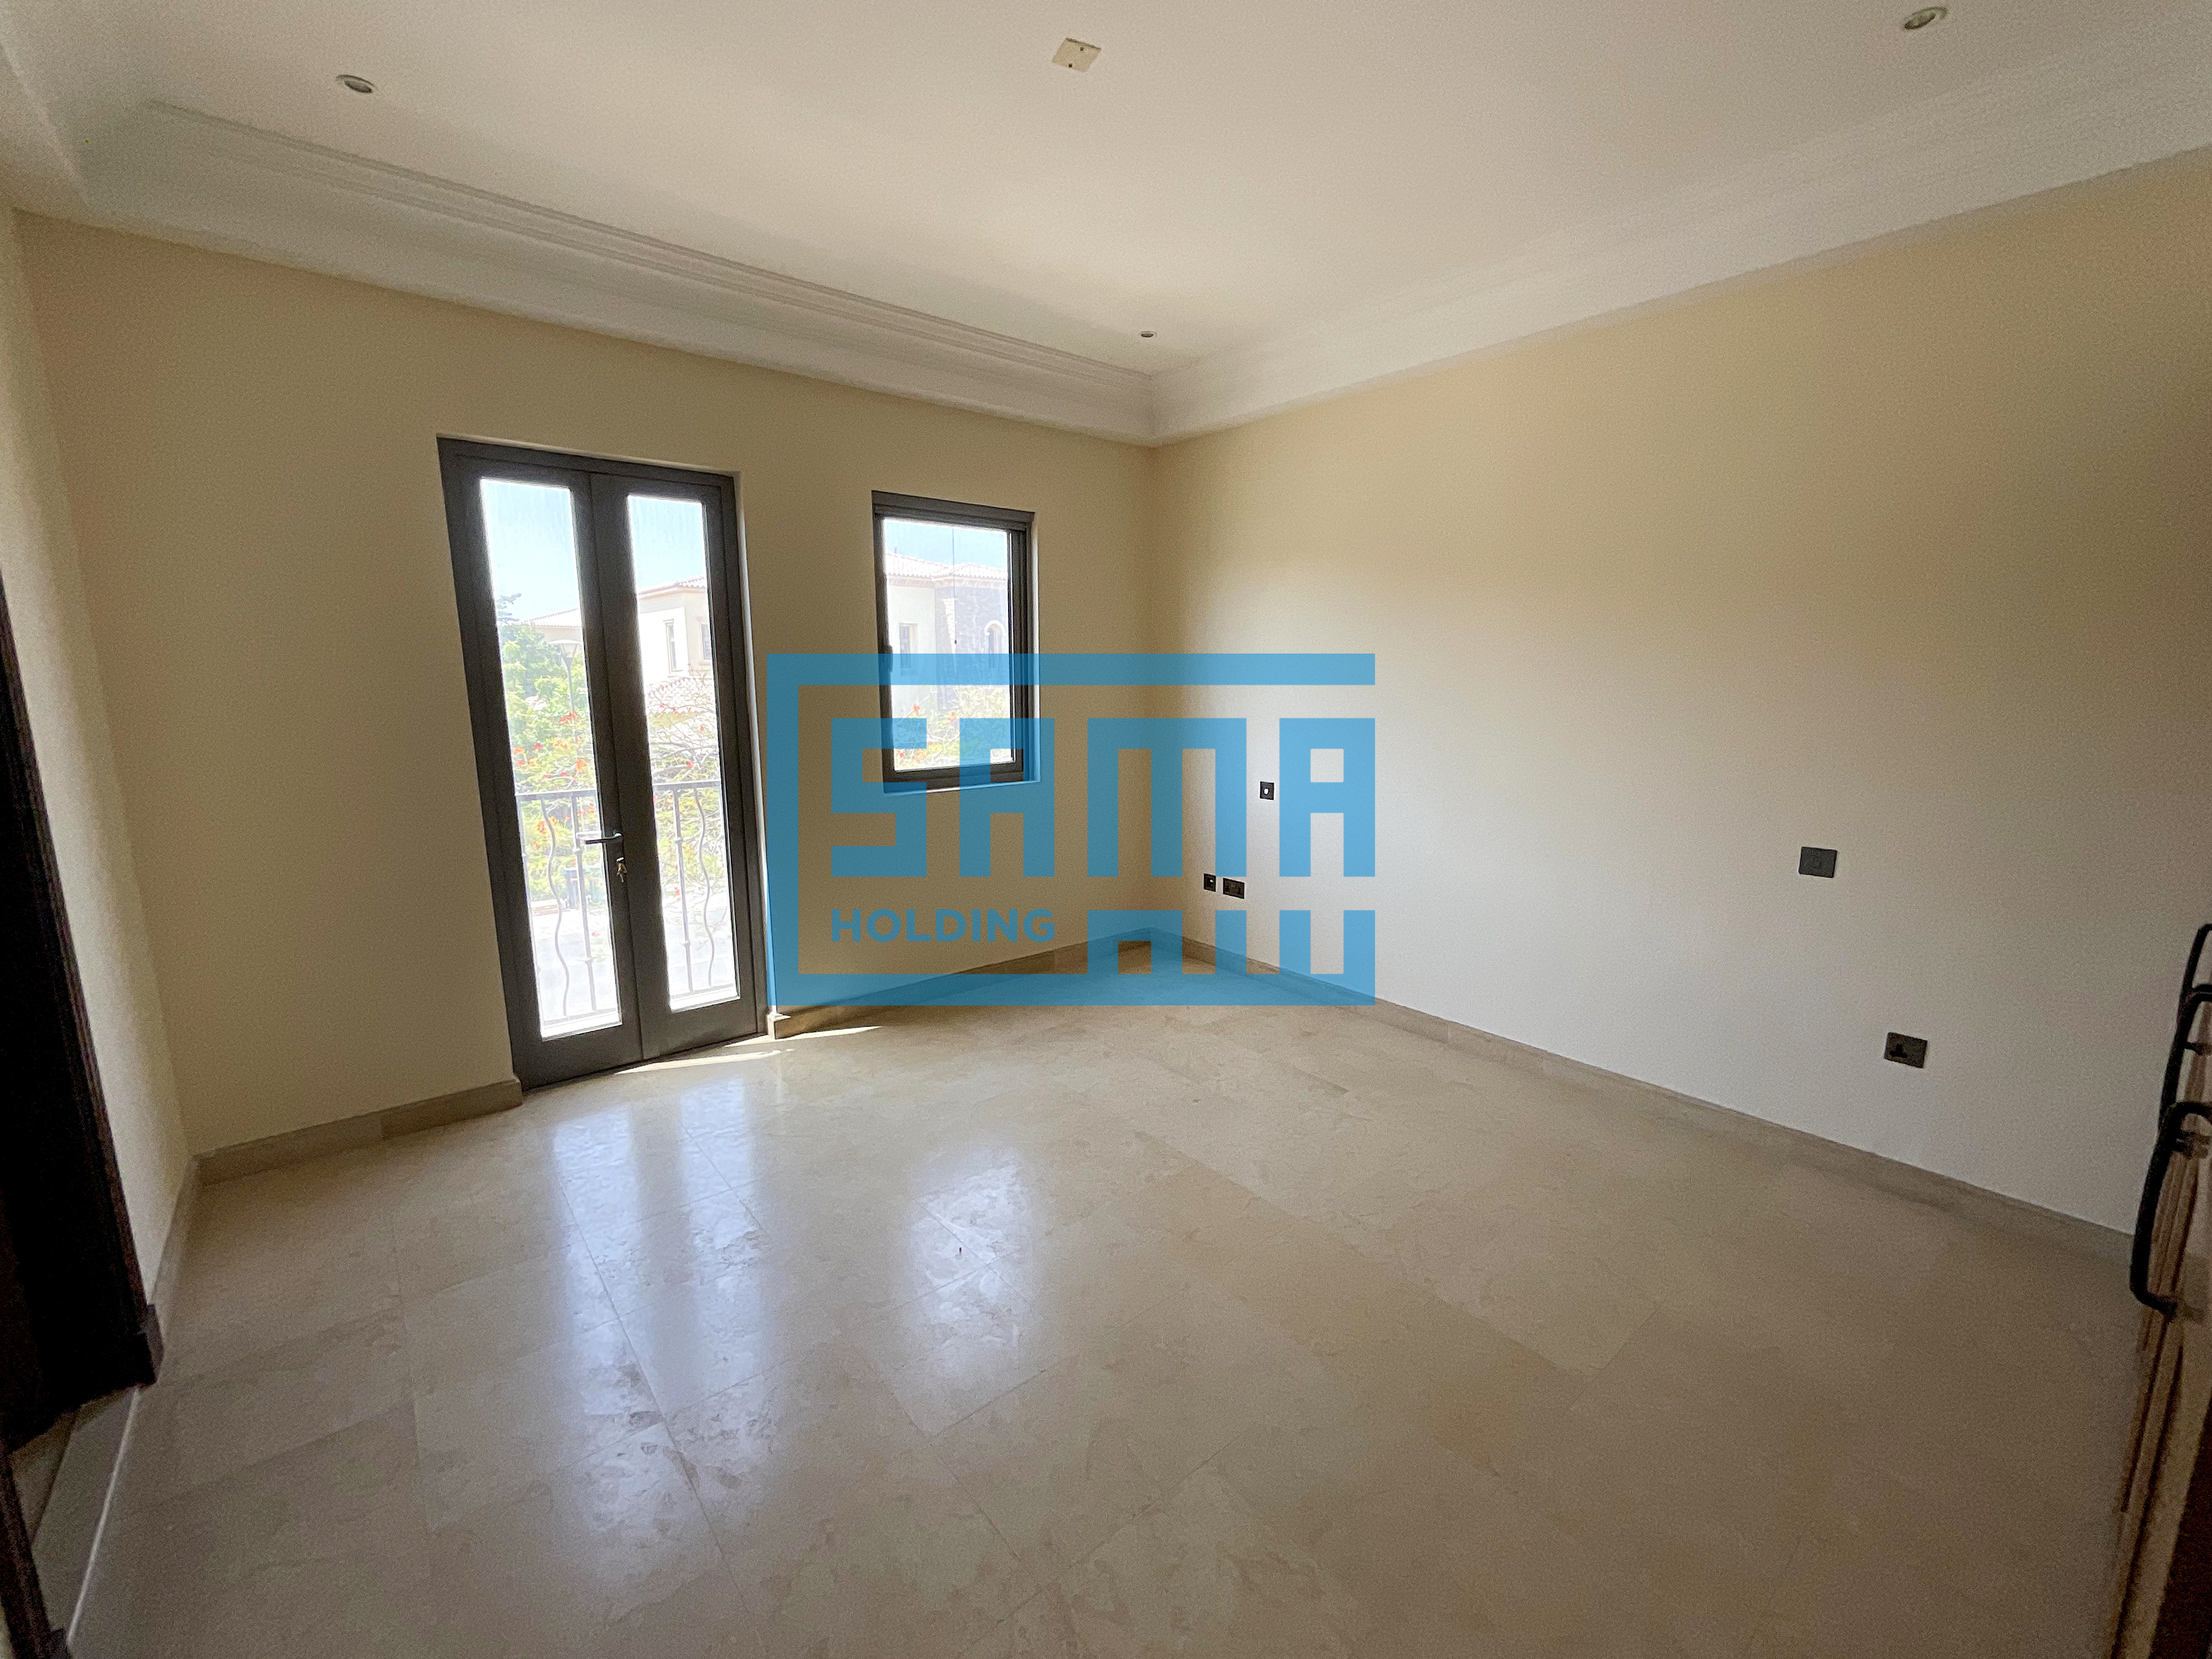 3 Bedroom Townhouse for Sale located in Abu Dhabi, Saadiyat Beach Villas